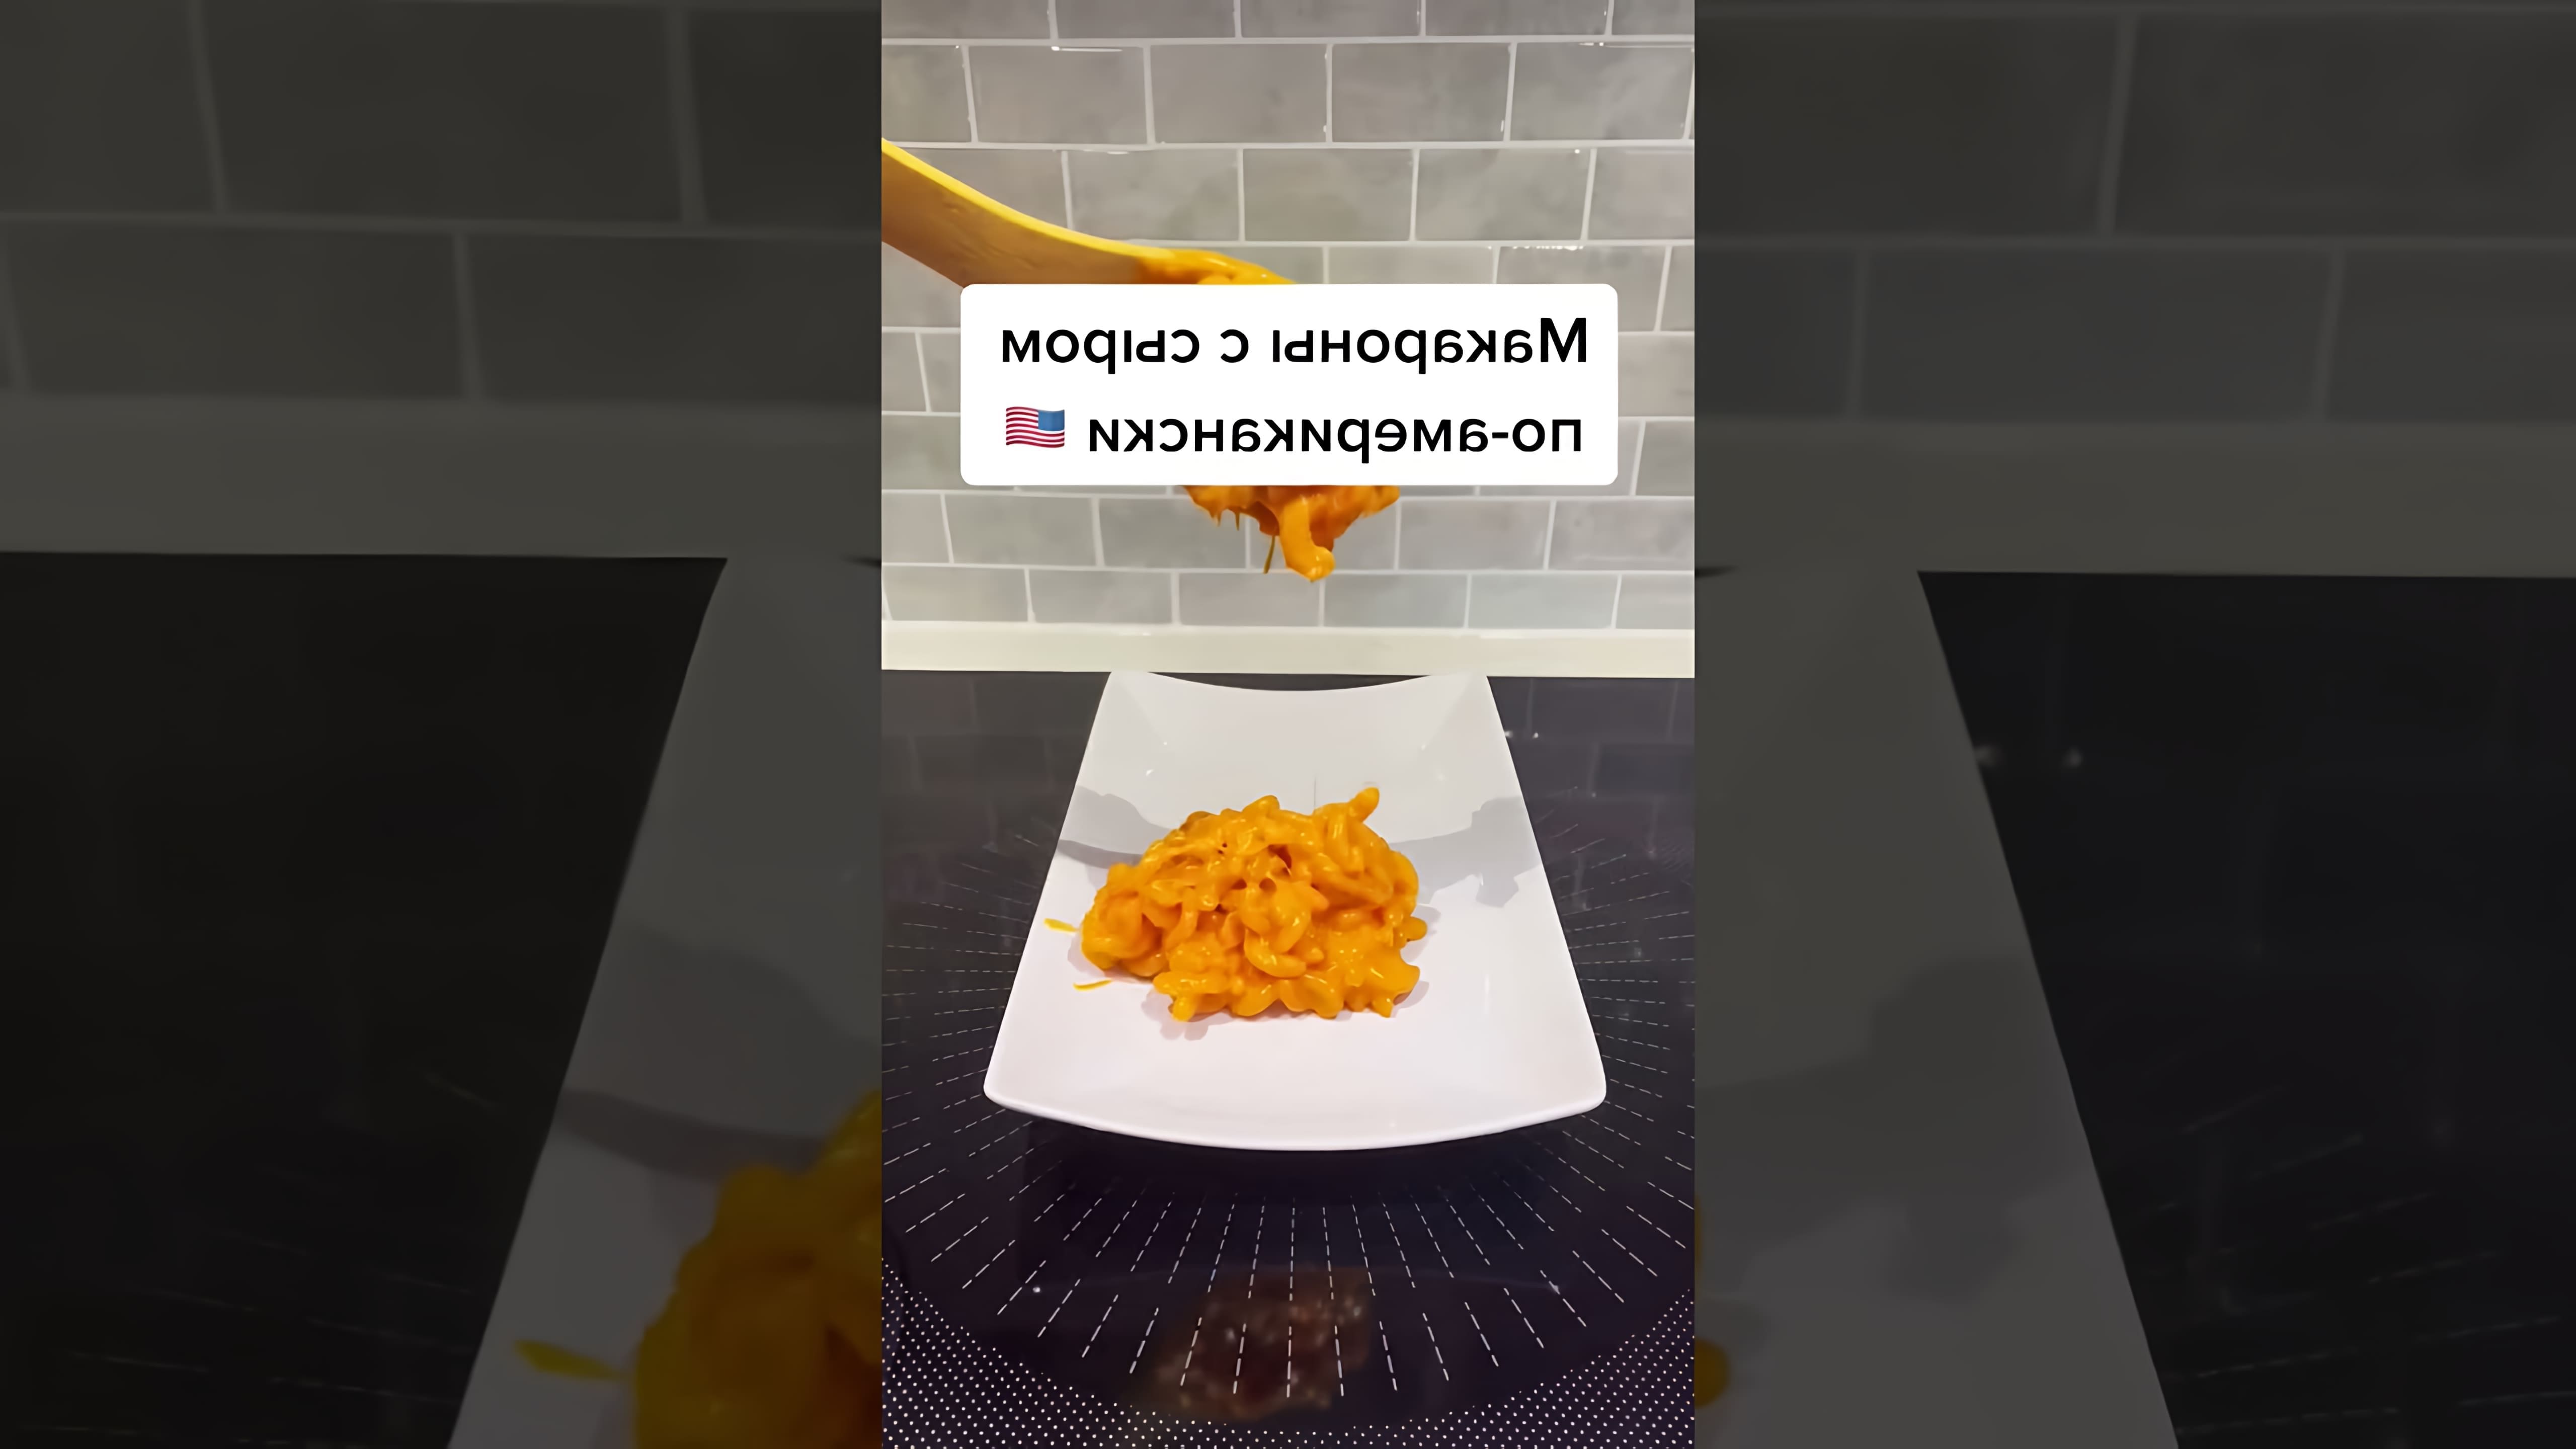 В этом видео-ролике демонстрируется процесс приготовления макарон из чипсов Cheetos